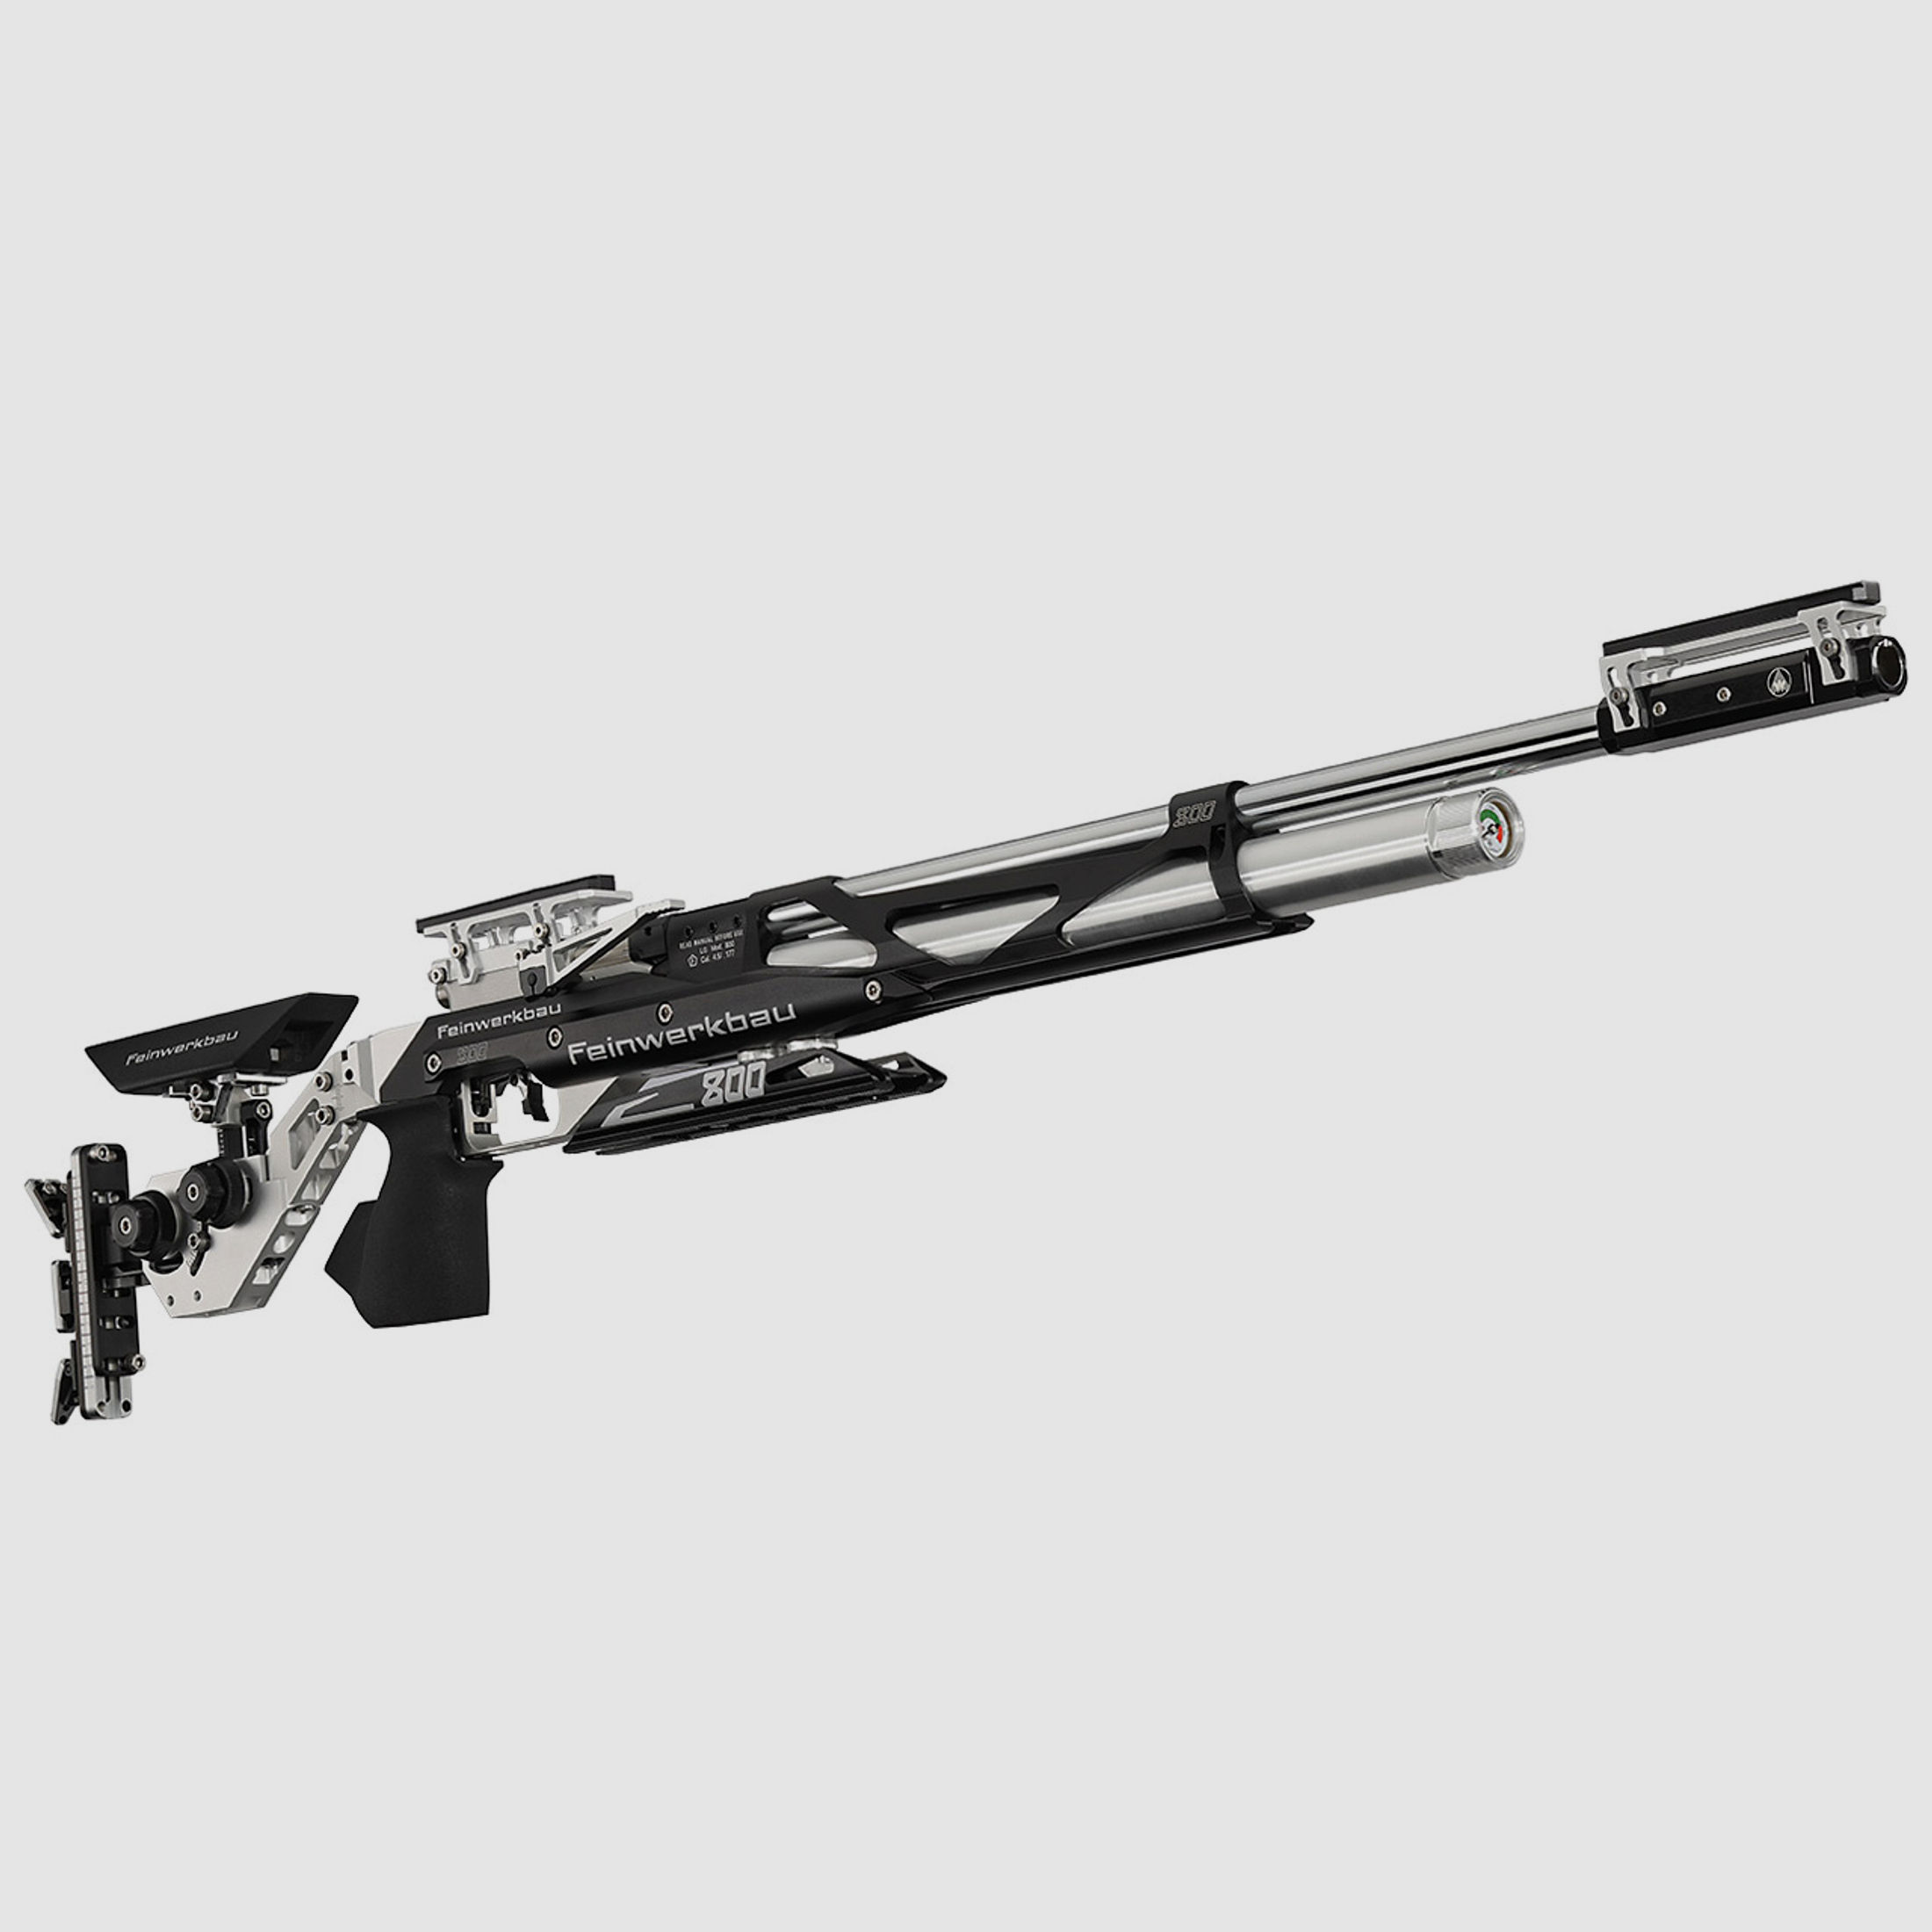 Match-Pressluftgewehr Feinwerkbau Modell 800 X Rechtsgriff Medium, schwarz, ohne Visierung, Kaliber 4,5 mm (P18)